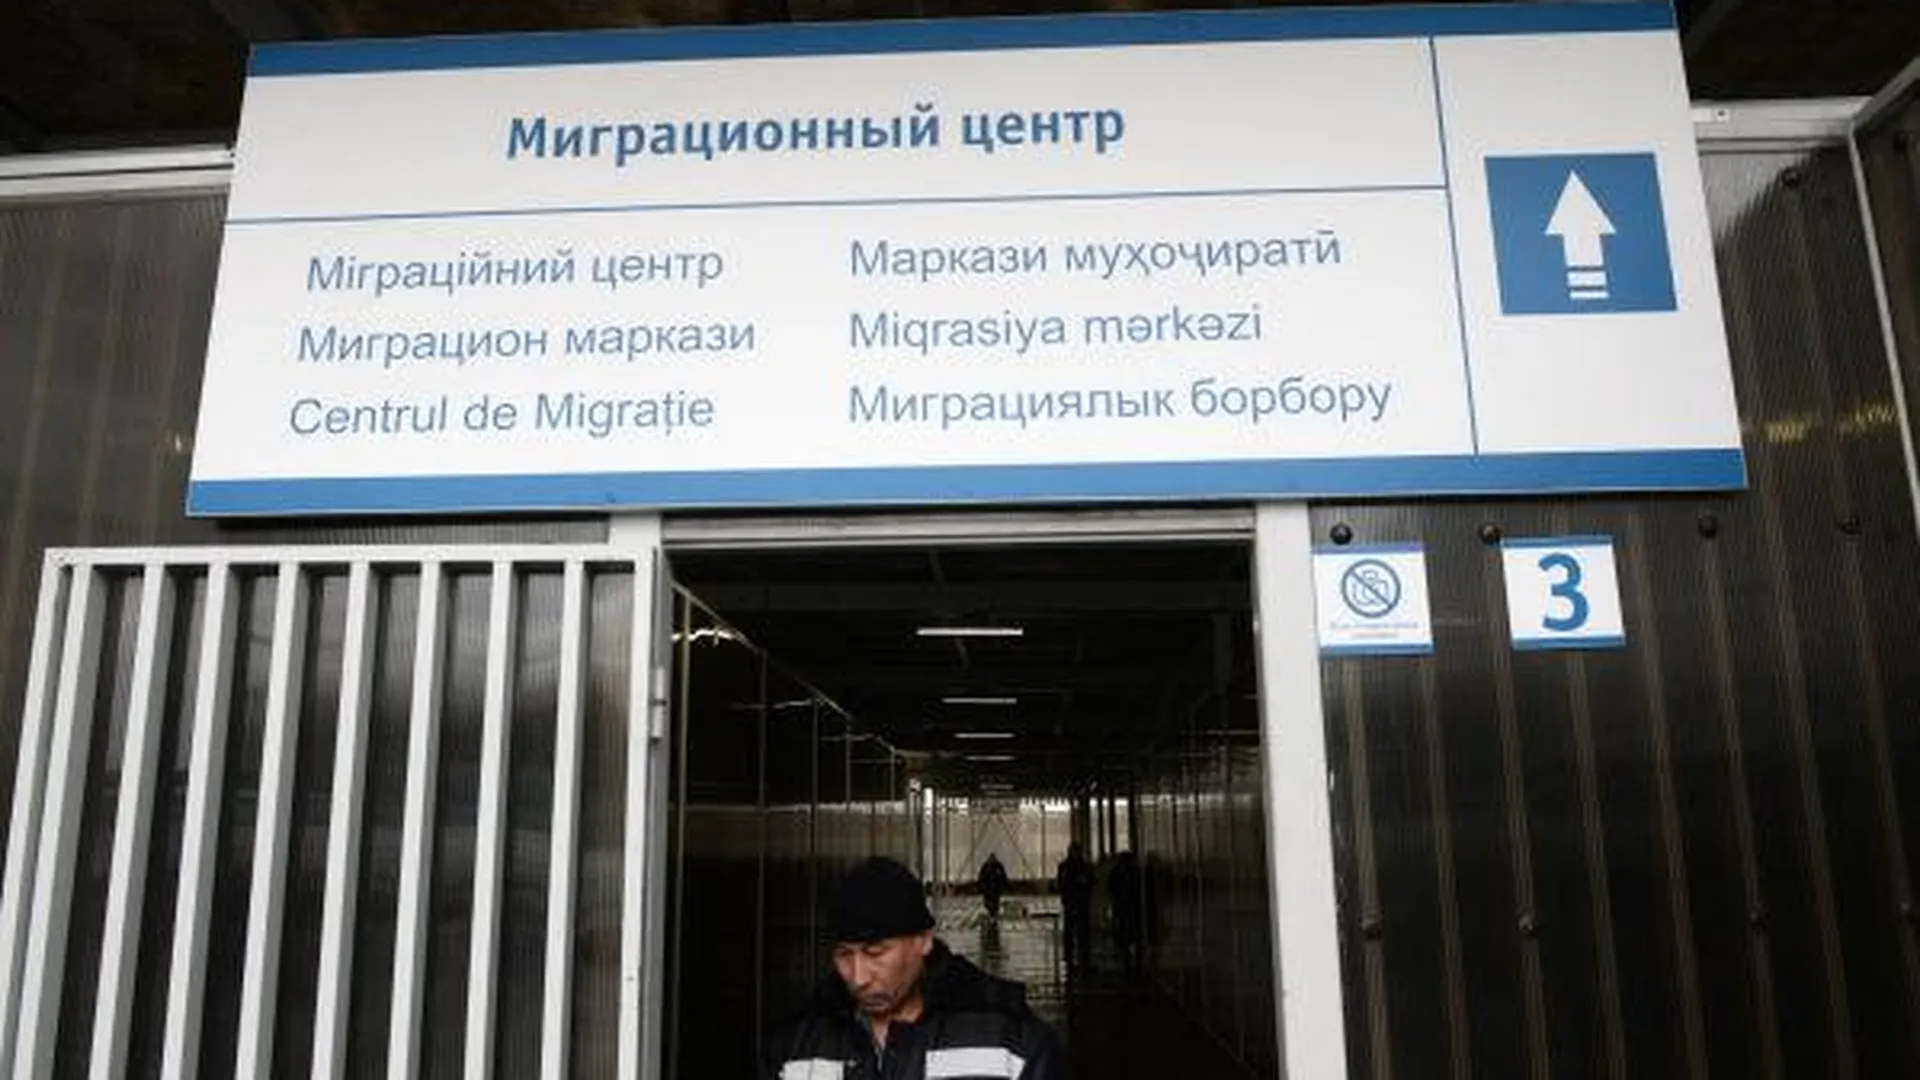 Качество работы Единого миграционного центра обсудят в Подмосковье